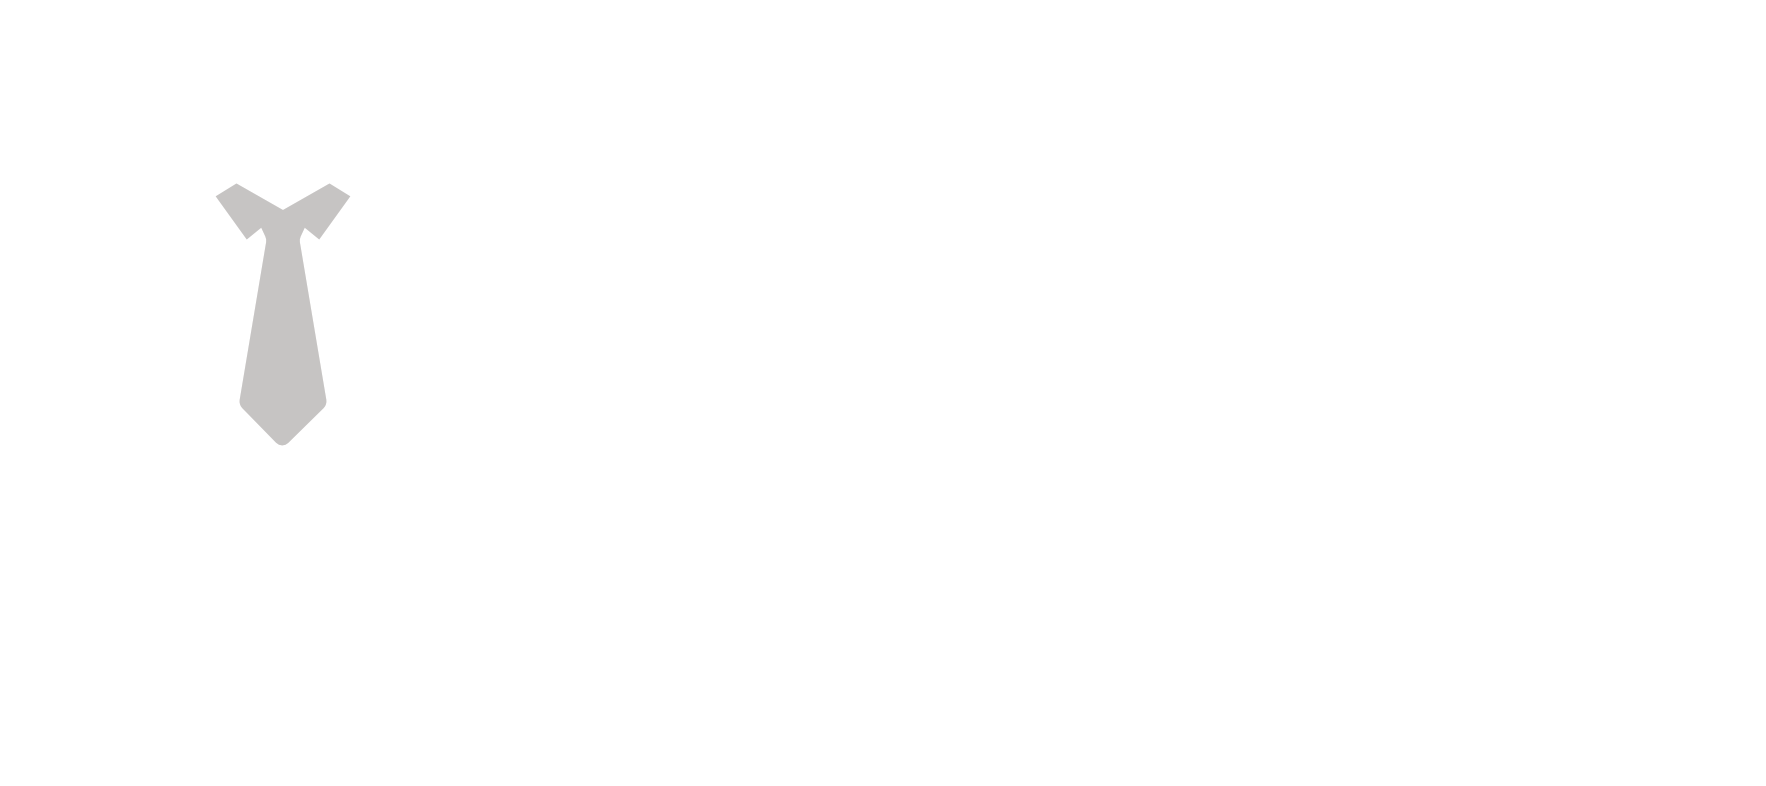 Ufficio Service